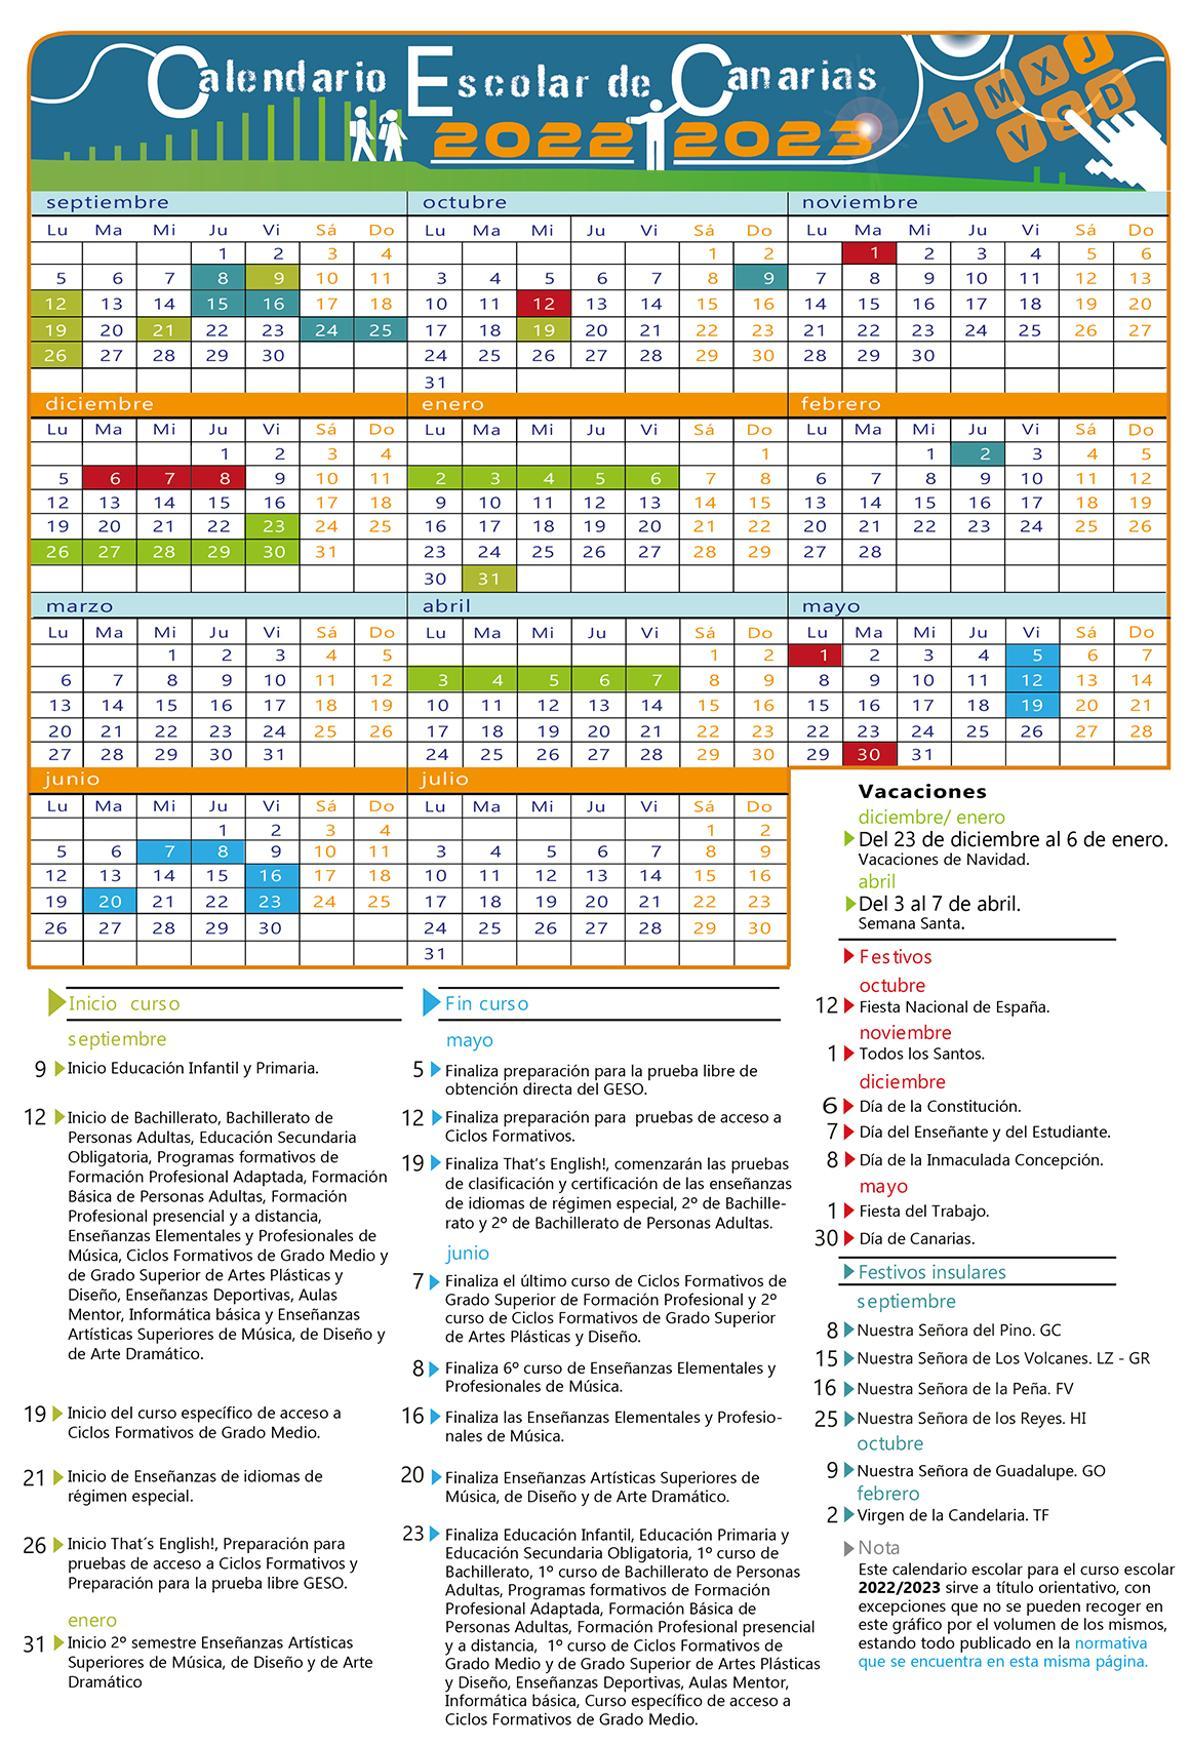 Calendario Escolar de Canarias 2022/2023